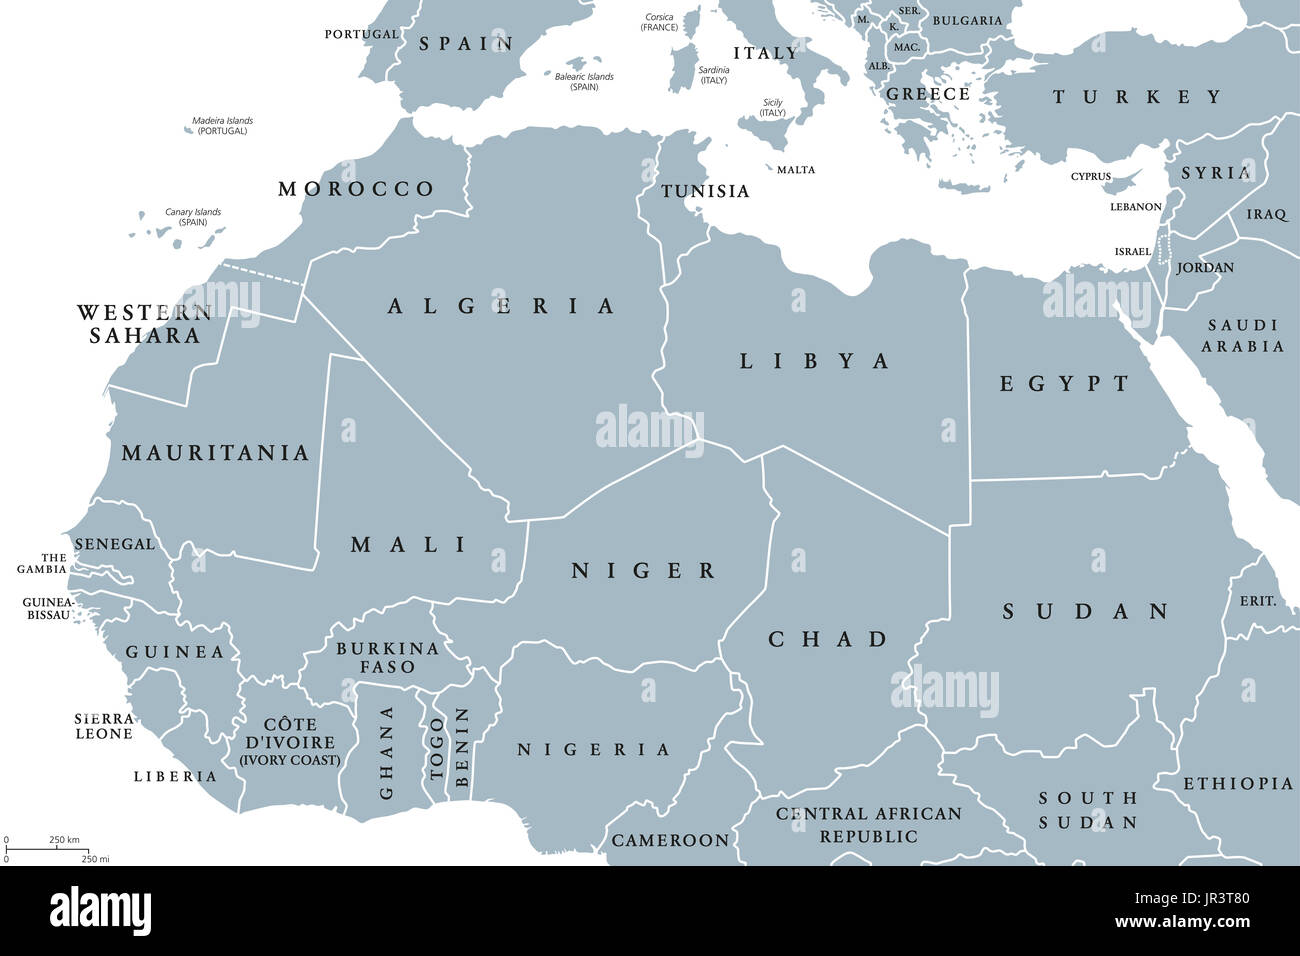 Países de África del Norte mapa político con fronteras. Rótulos En inglés. Desde la costa atlántica de Marruecos hasta el Mar Rojo. Magreb y el Mediterráneo. Foto de stock